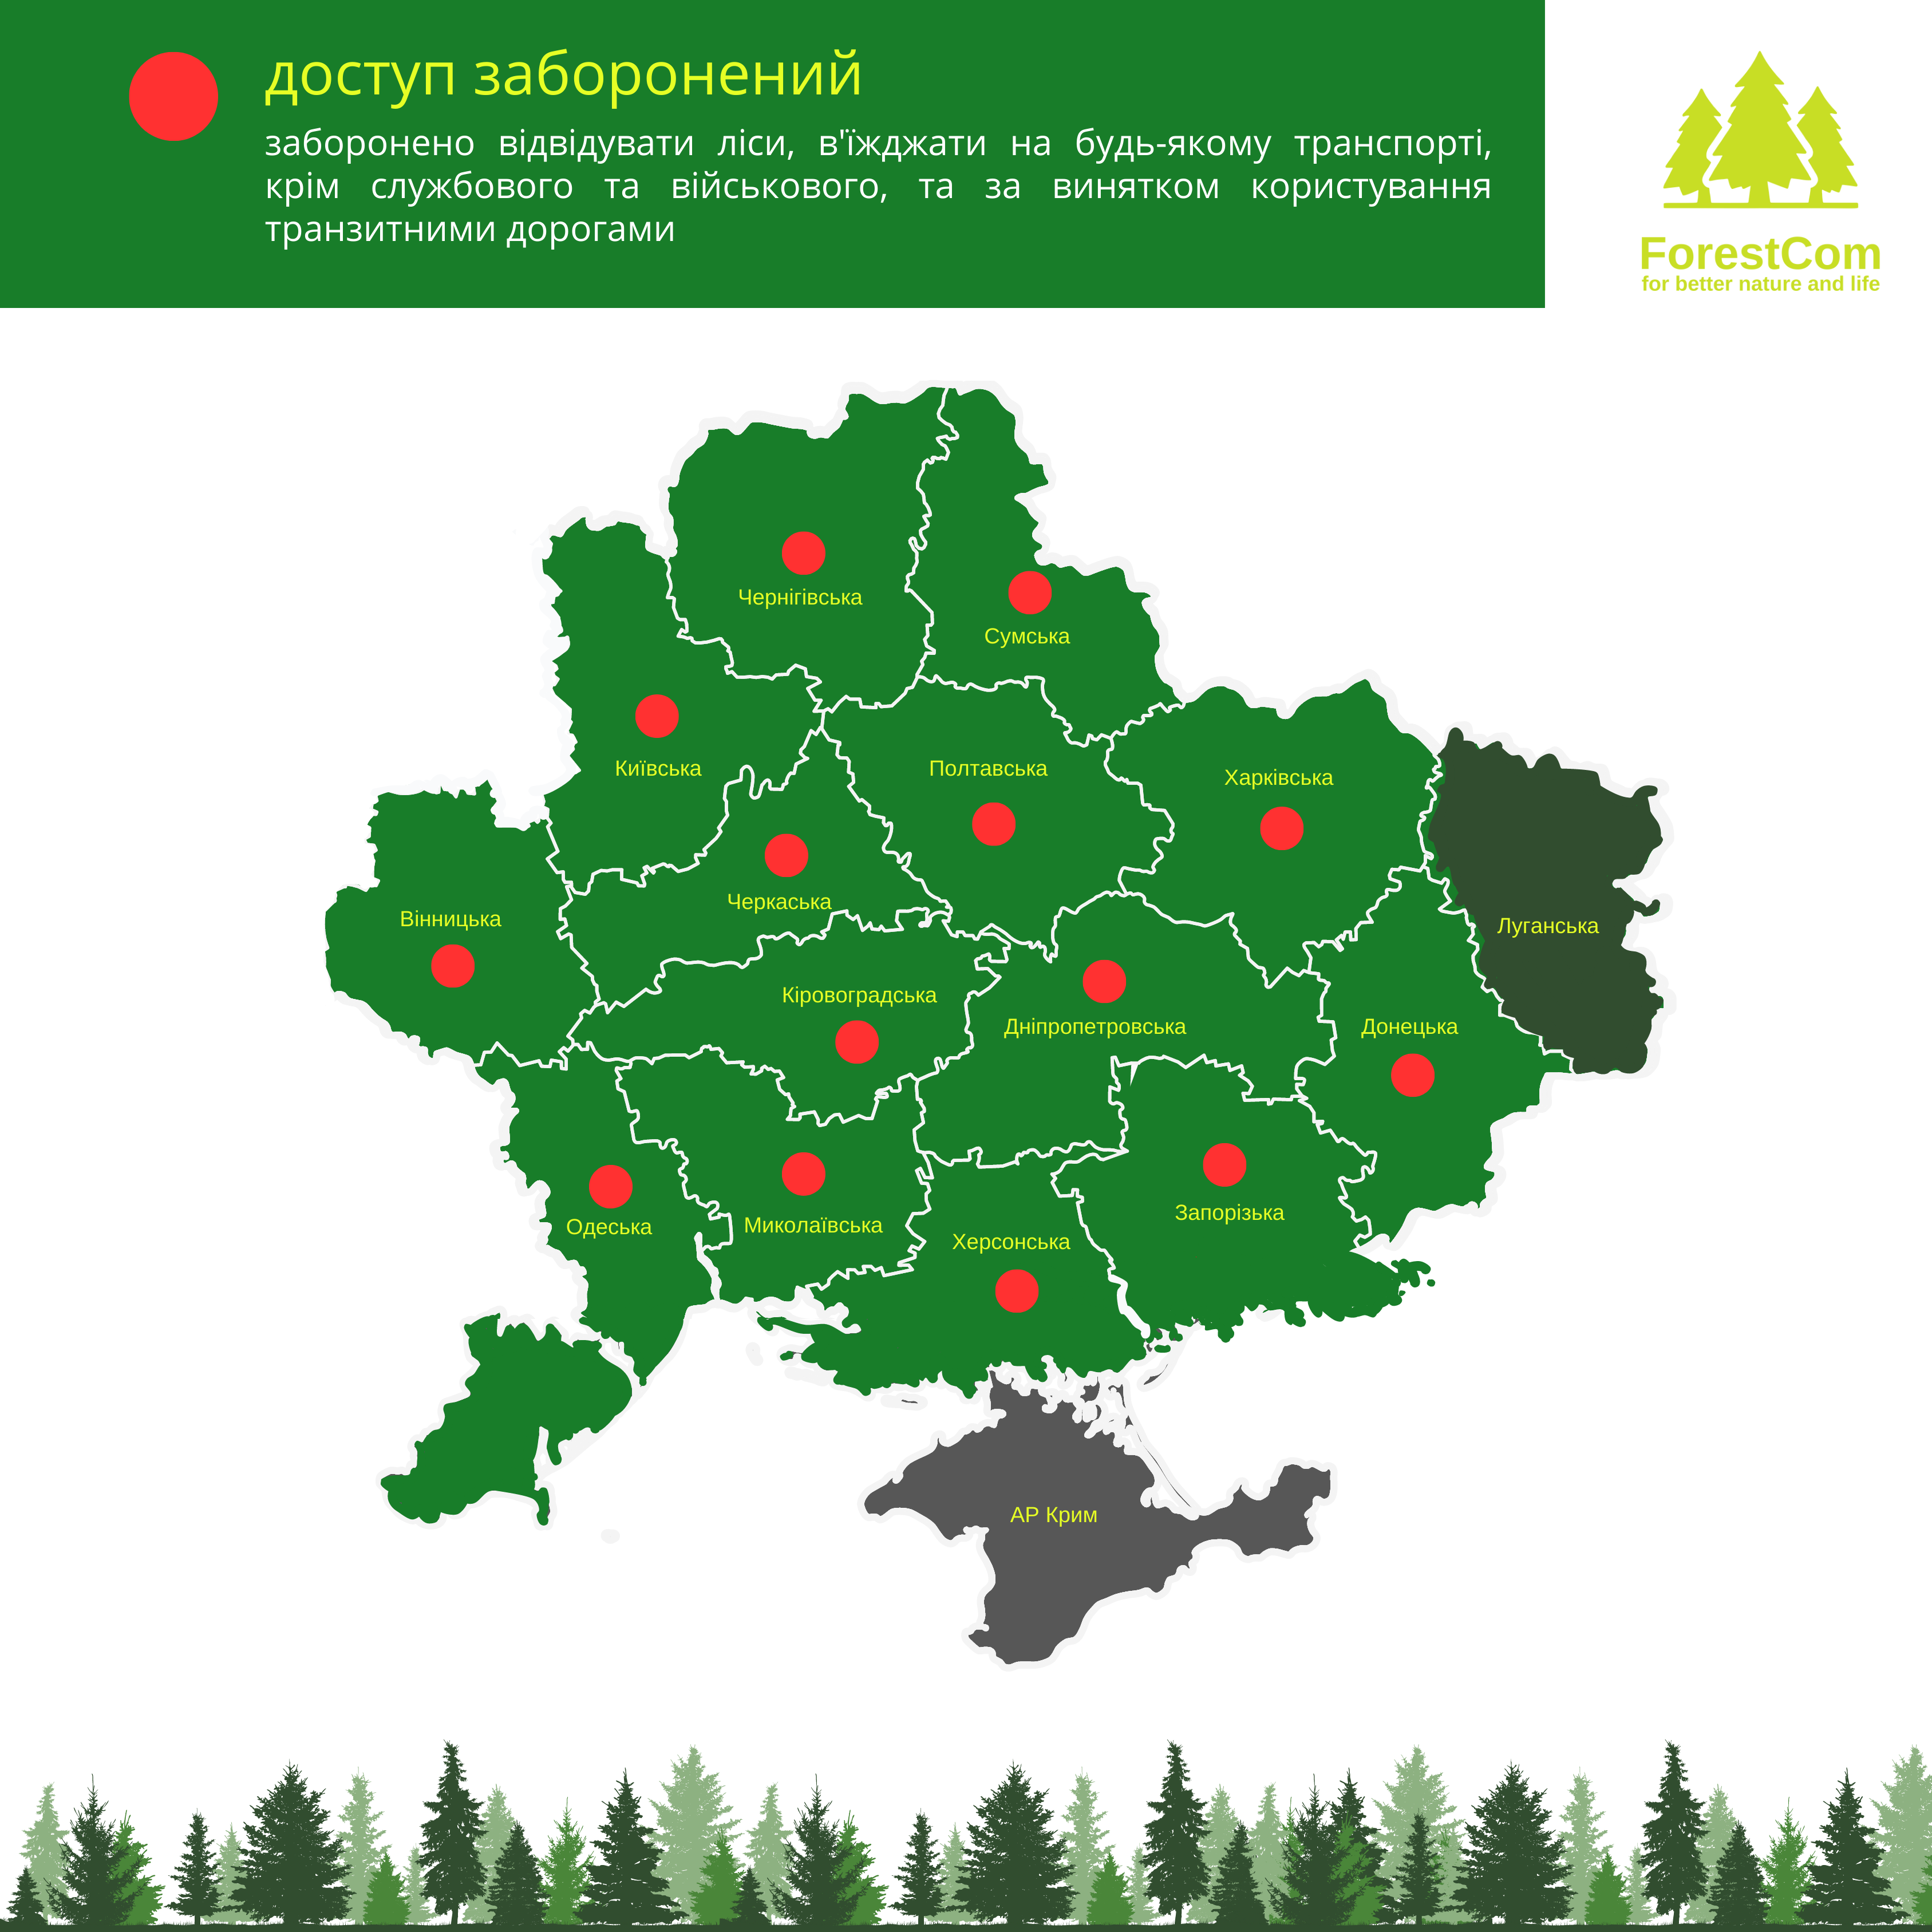 forestcom.org.ua